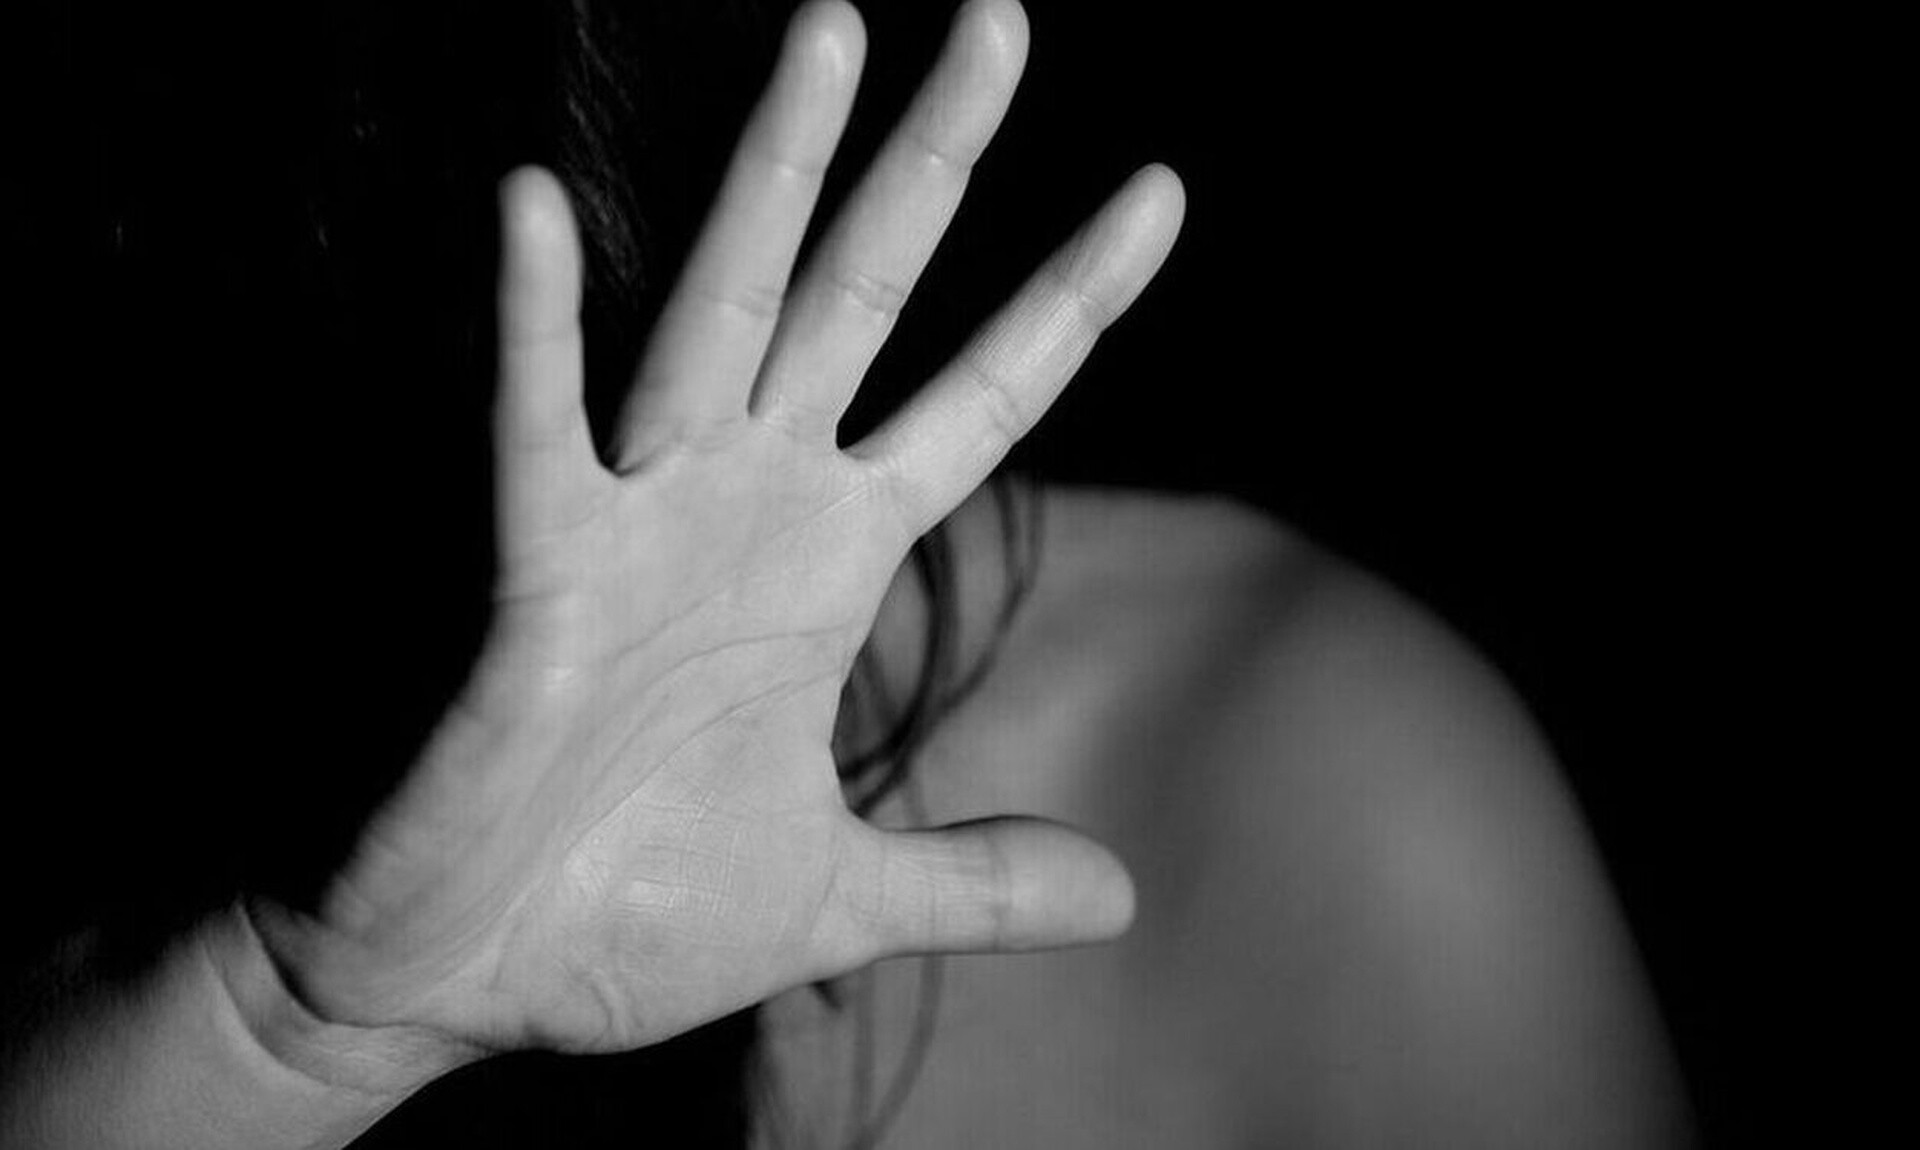 Θεσσαλονίκη: Συνελήφθη 27χρονος για σεξουαλική παρενόχληση 16χρονης στον δρόμο